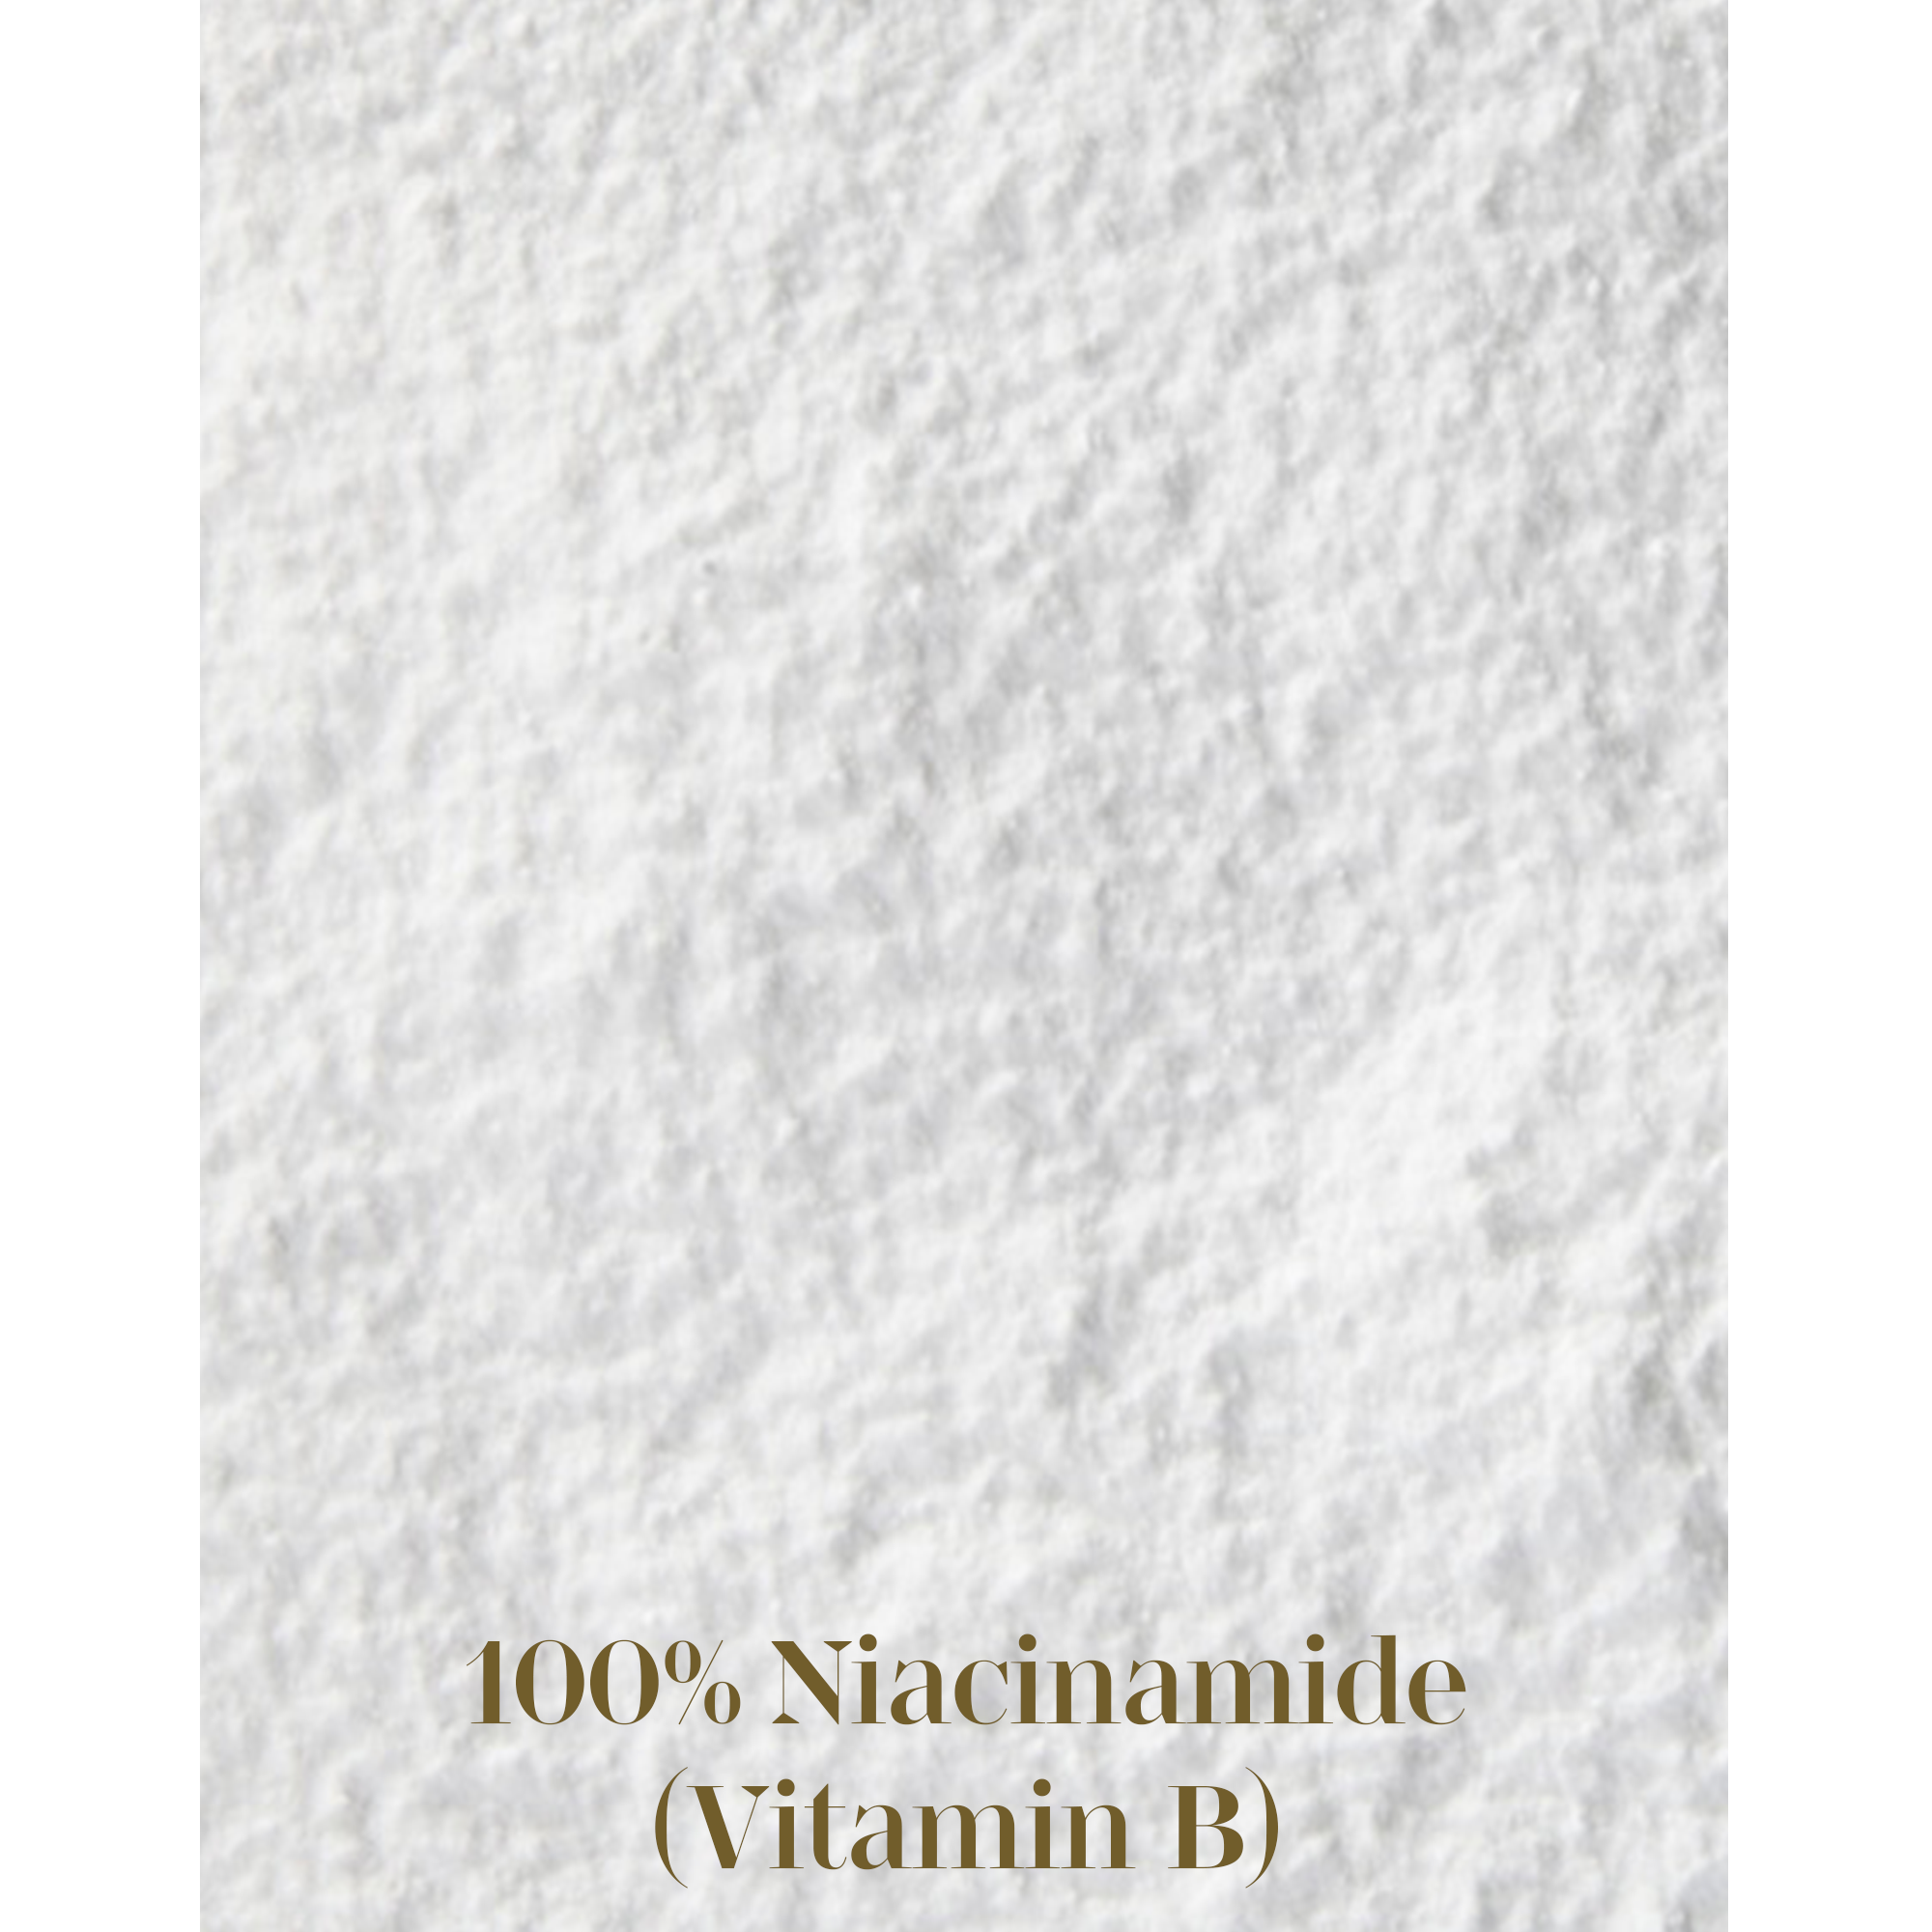 Facial Pore-Refining Powder - 100% Niacinamide 零毛孔美顏粉 12g